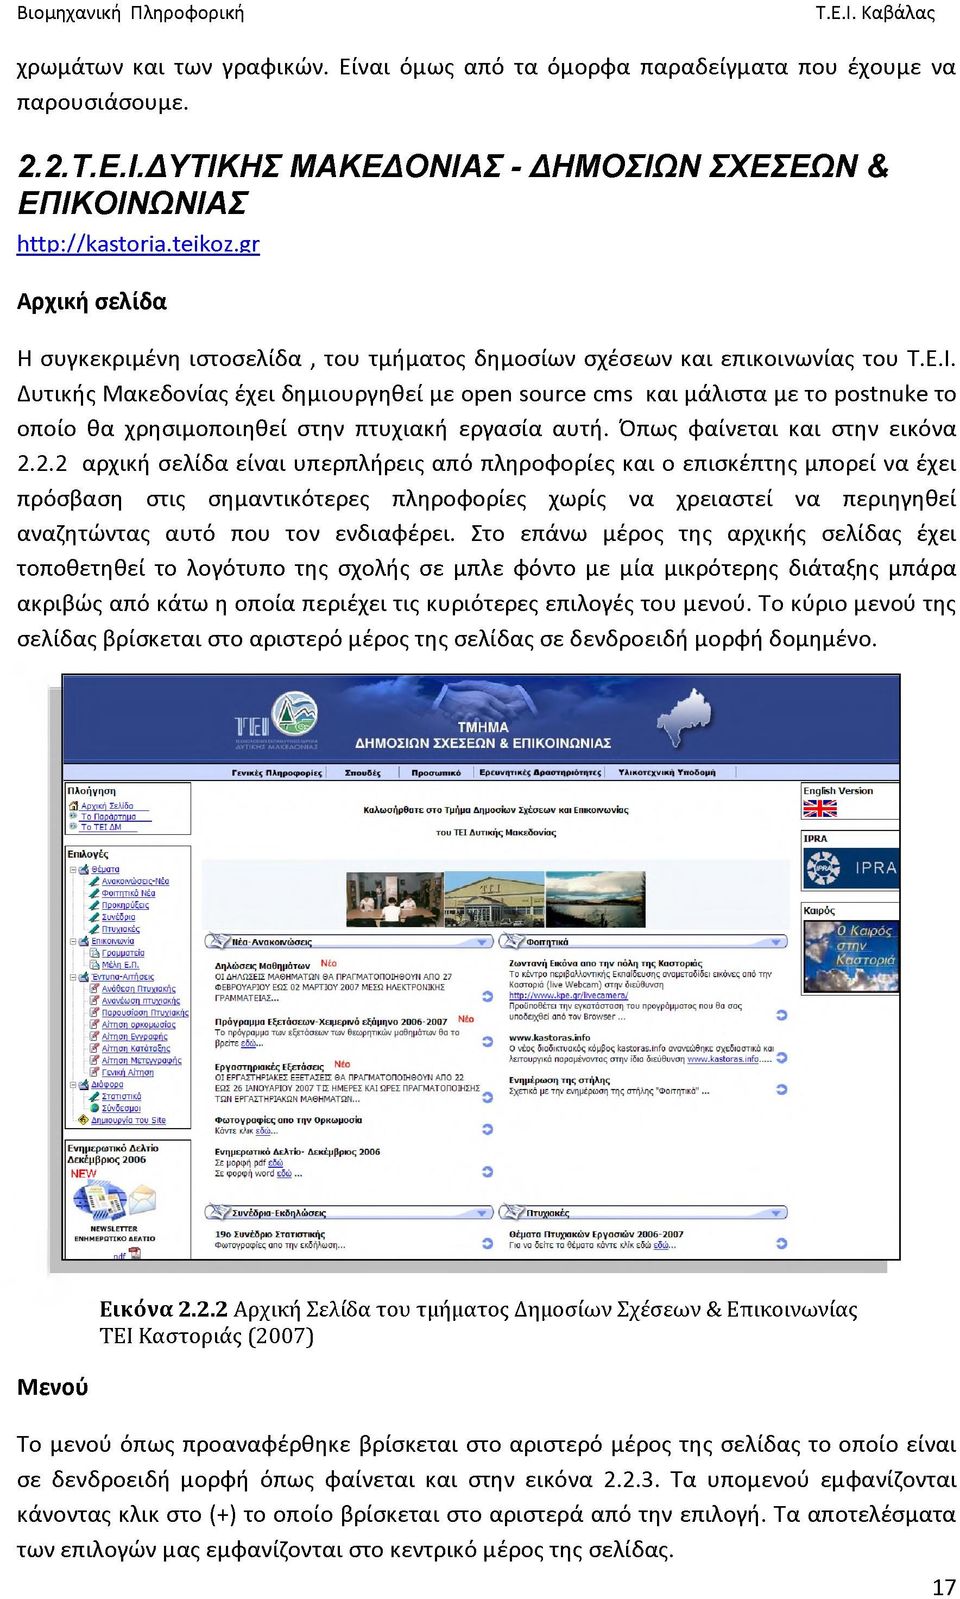 Δυτικής Μακεδονίας έχει δημιουργηθεί με open source cms και μάλιστα με το postnuke το οποίο θα χρησιμοποιηθεί στην πτυχιακή εργασία αυτή. Όπως φαίνεται και στην εικόνα 2.